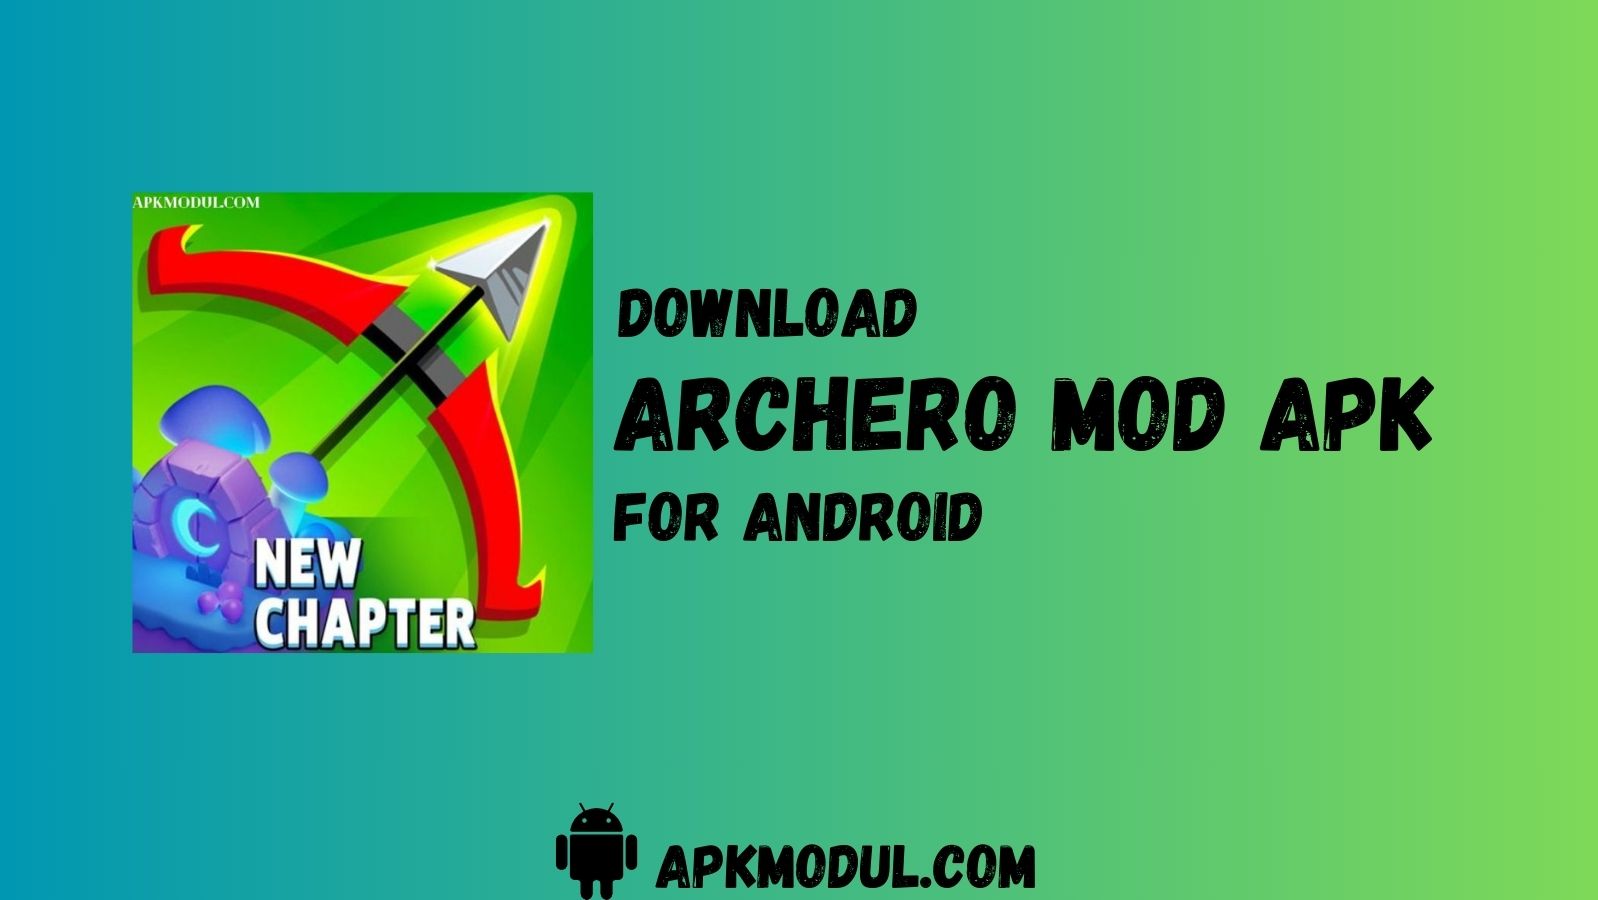 Archero Mod App